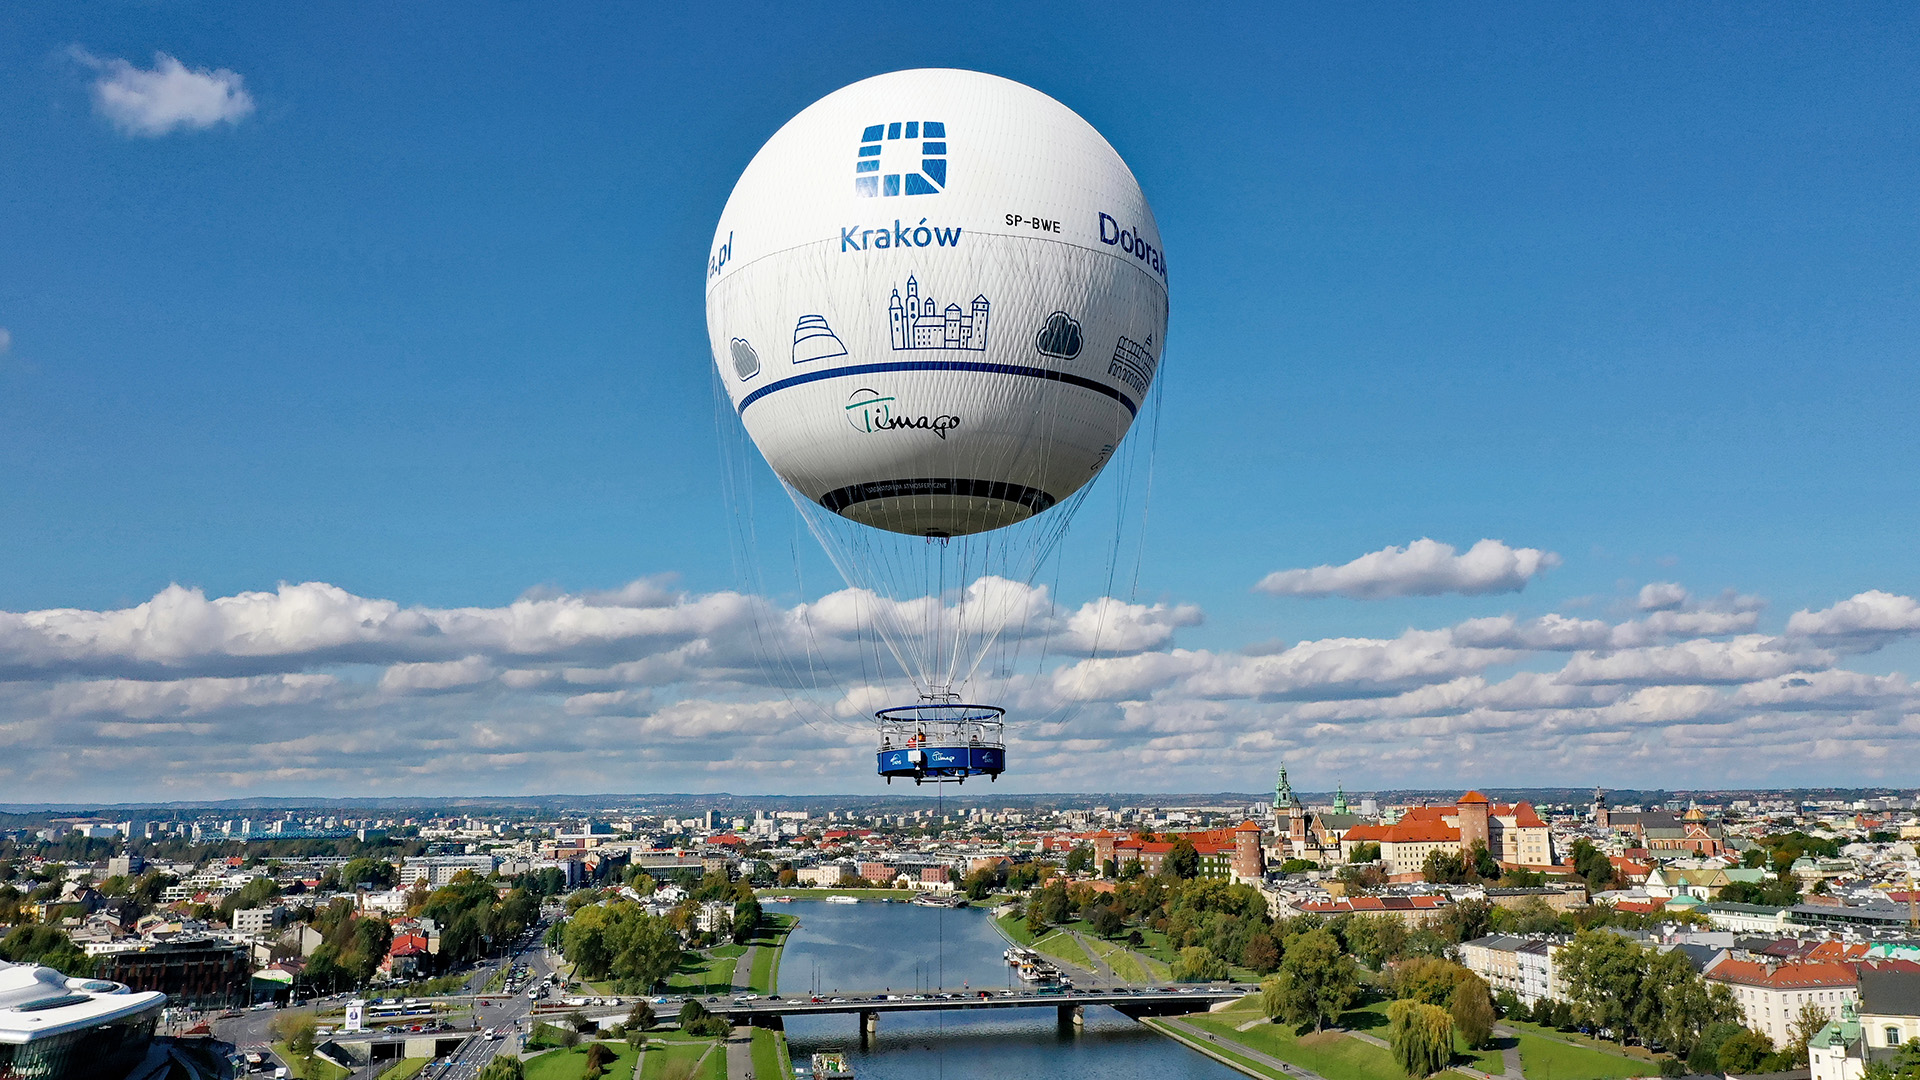 Score Pioneer Peave Balon Widokowy w Krakowie Balon widokowy Zobacz Kraków z lotu ptaka!